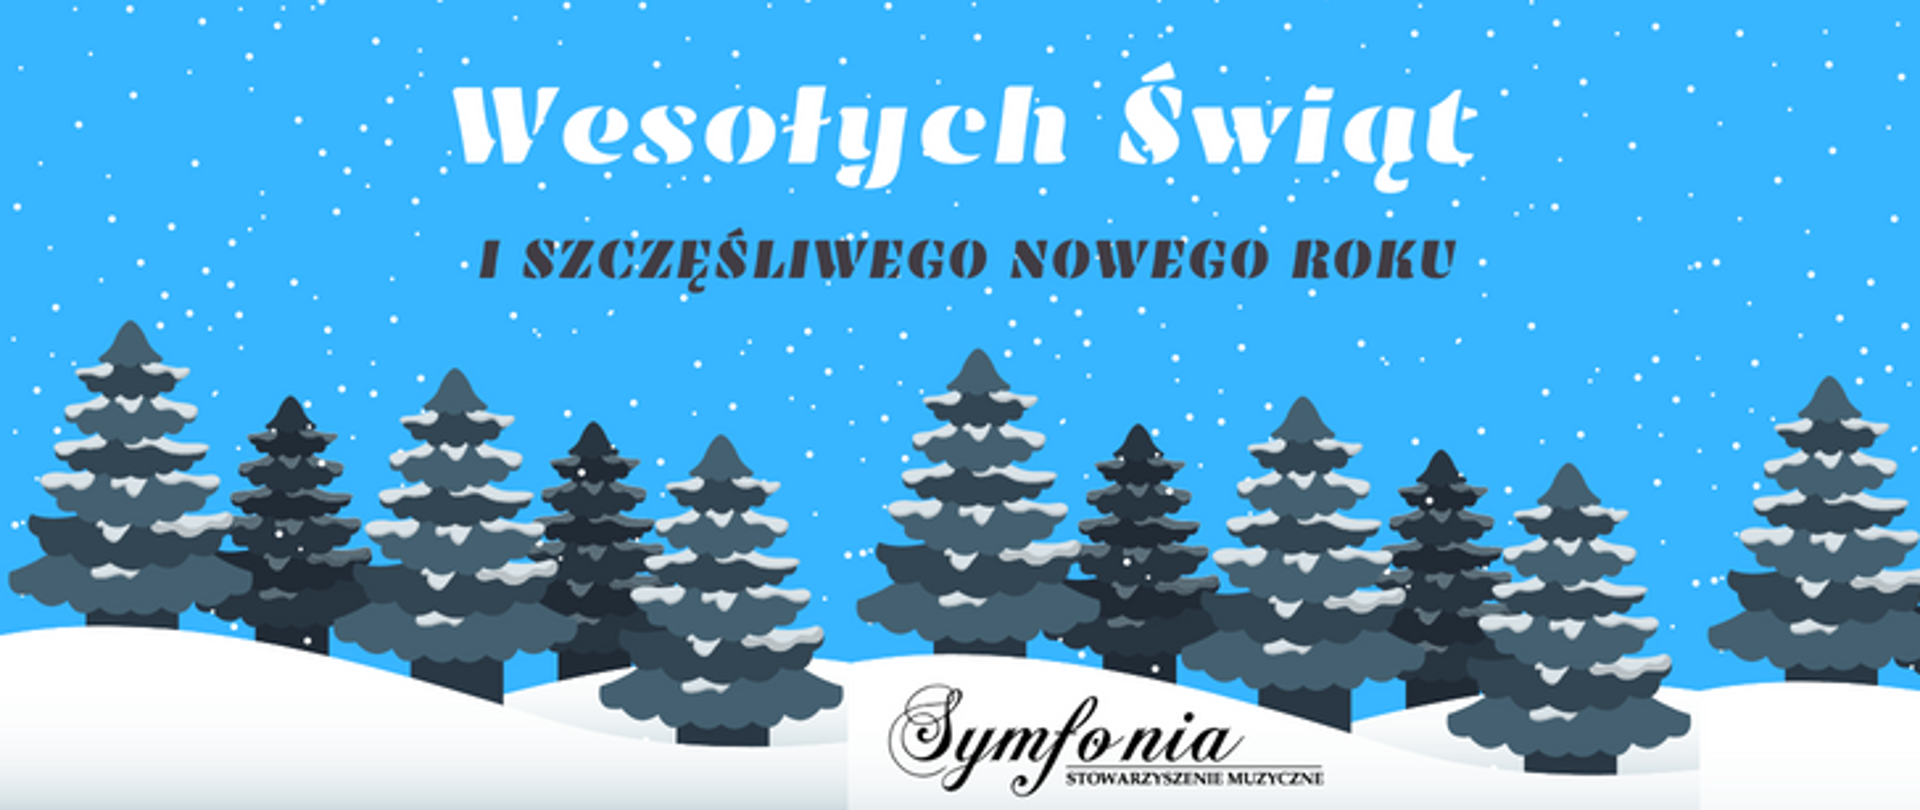 zdjęcie przedstawia kartkę świąteczną na niebieskim tle padający śnieg, na górze napis wesołych świat i szczęśliwego nowego roku, pod napisem las choinek a pod nim logo symfonii